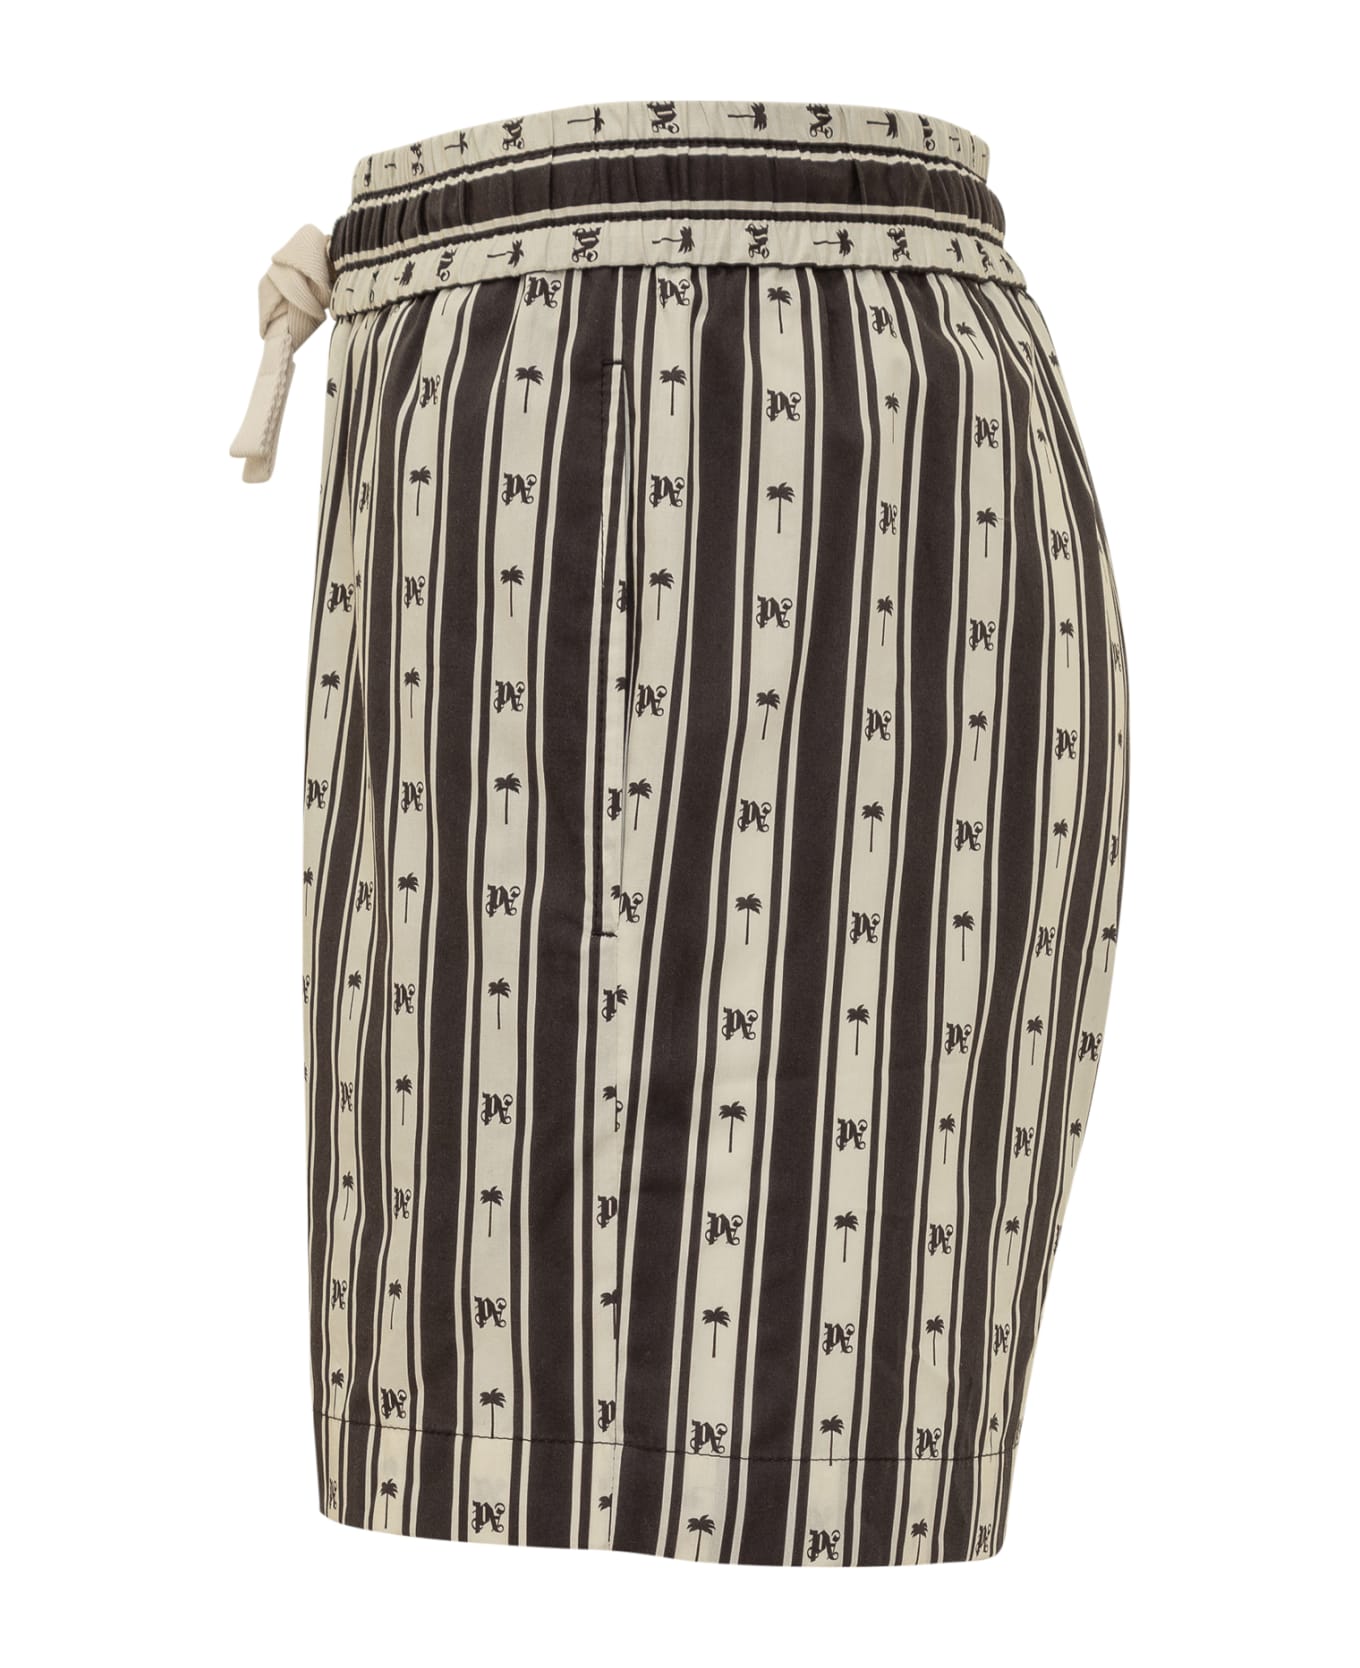 Palm Angels Stripe Short - BLACK/WHITE ショートパンツ